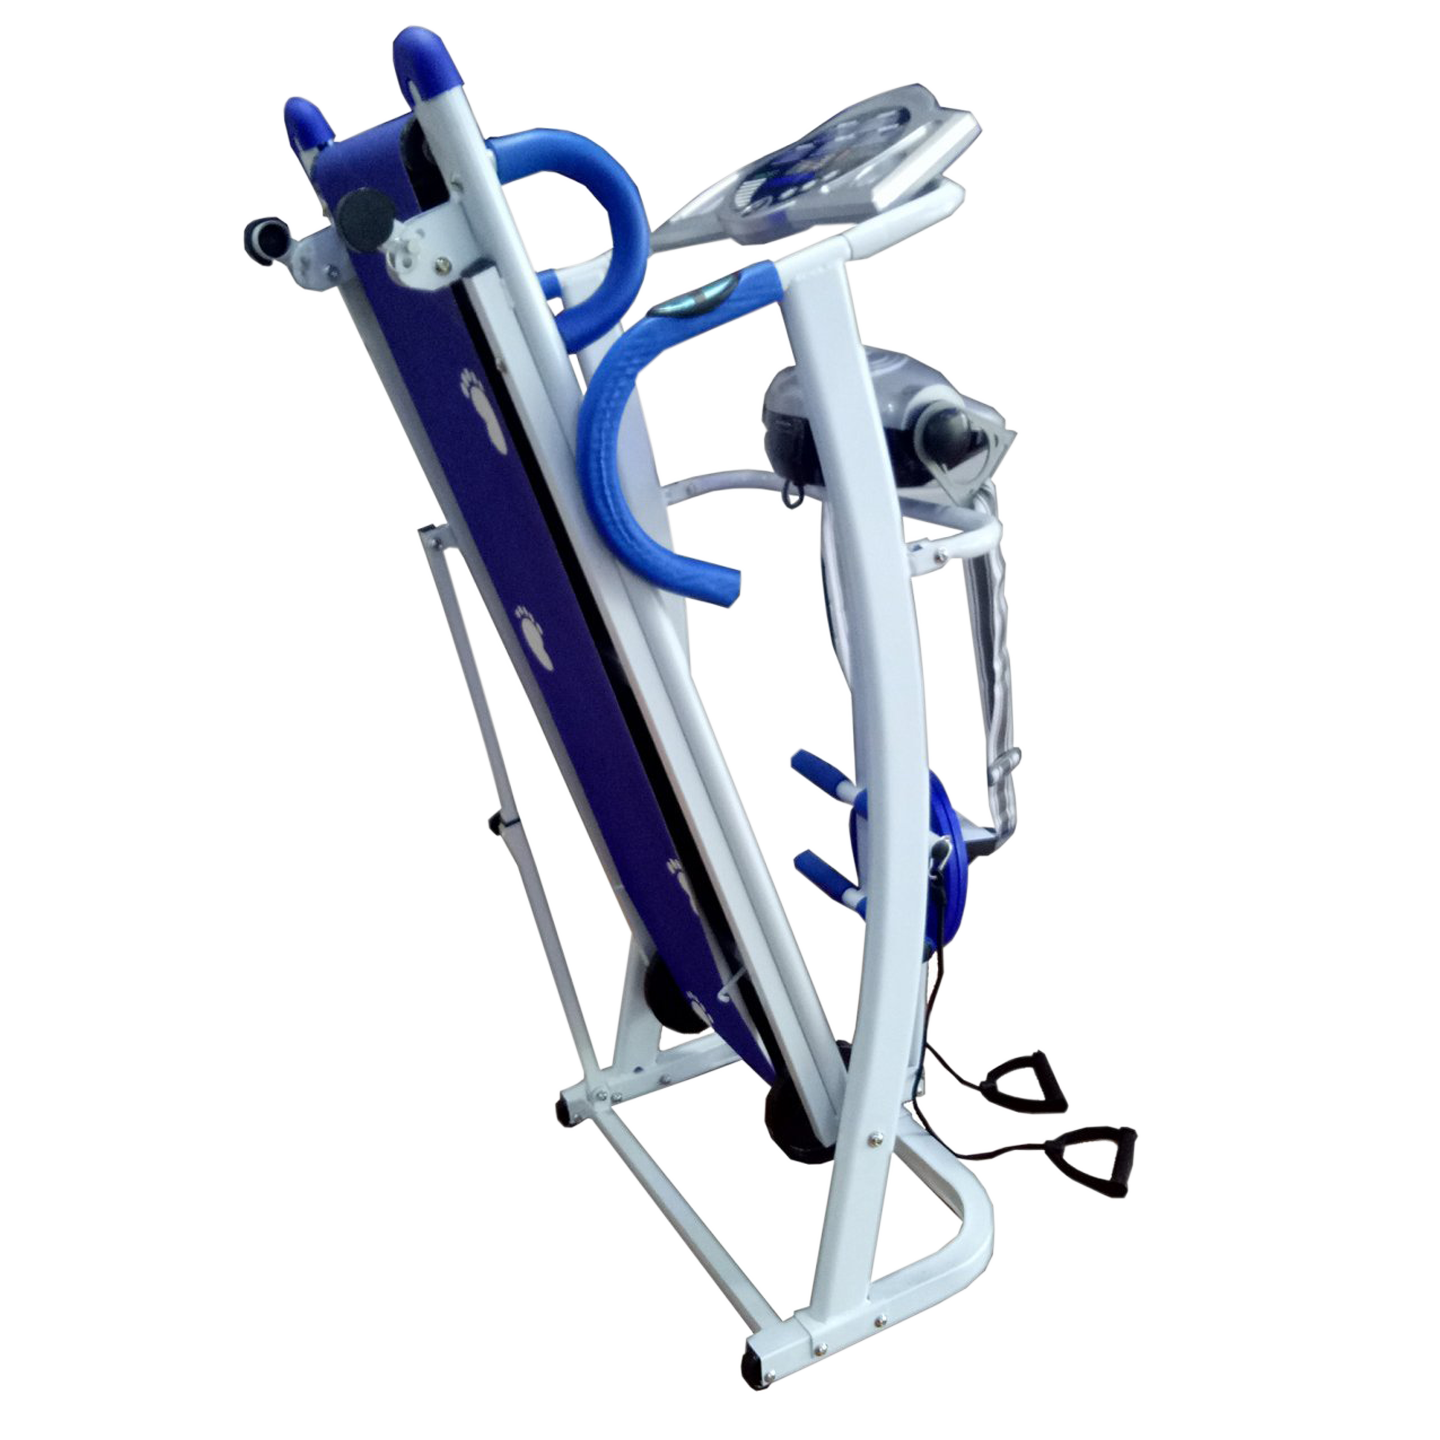 Toko Alat Fitness Treadmill LIPAT BGT 5008 harga  - MANUAL TREADMILL 5 FUNGSI